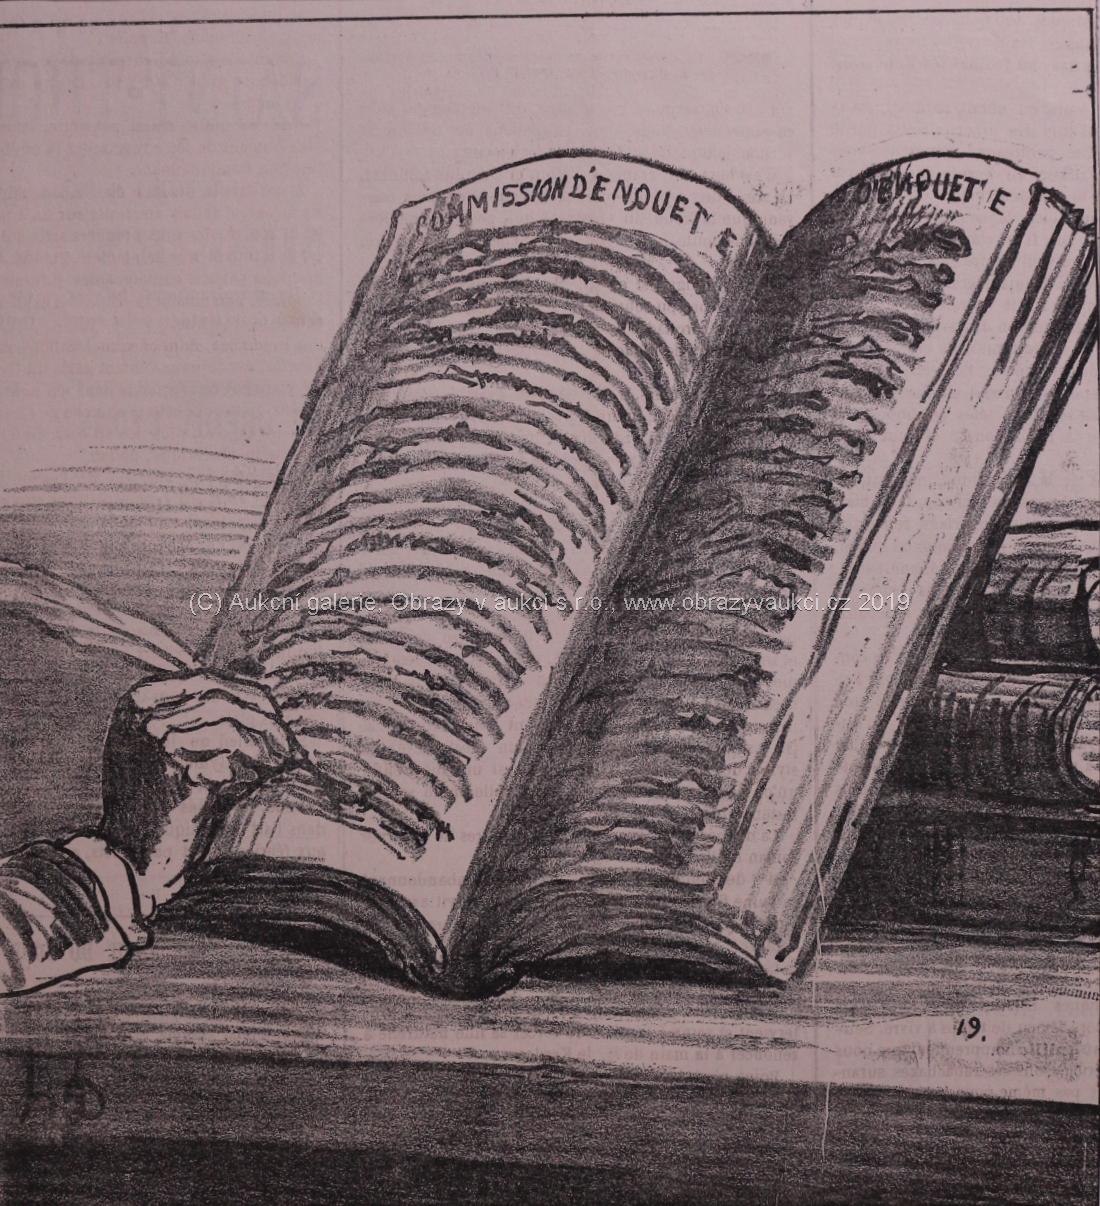 Honoré Daumier - Commission d'Enquet